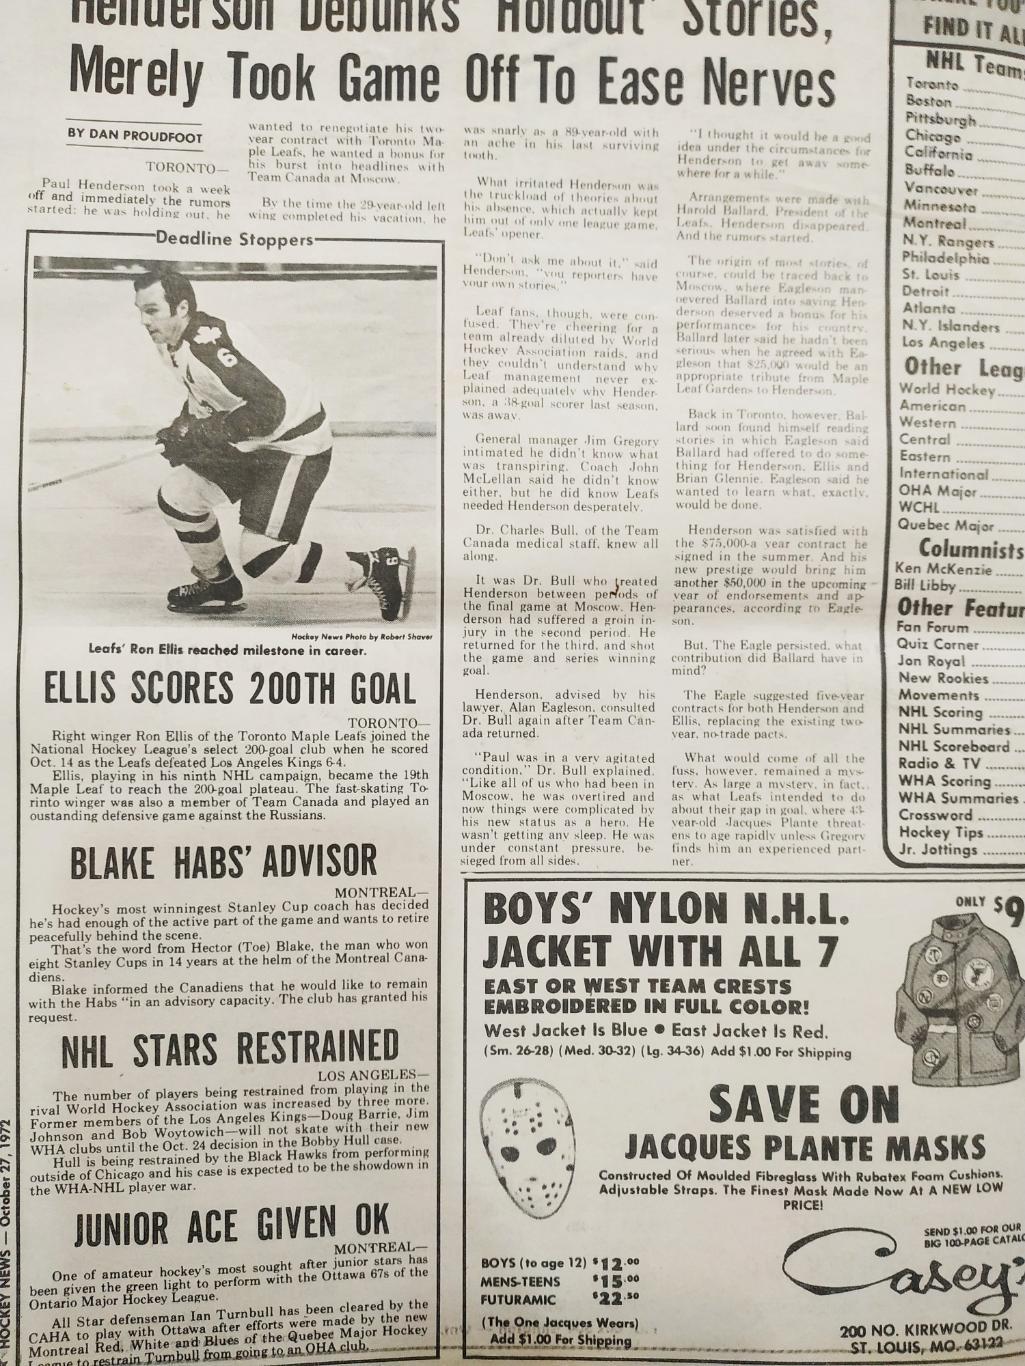 ХОККЕЙ ЖУРНАЛ ЕЖЕНЕДЕЛЬНИК НХЛ НОВОСТИ ХОККЕЯ OCT.27 1972 NHL THE HOCKEY NEWS 1